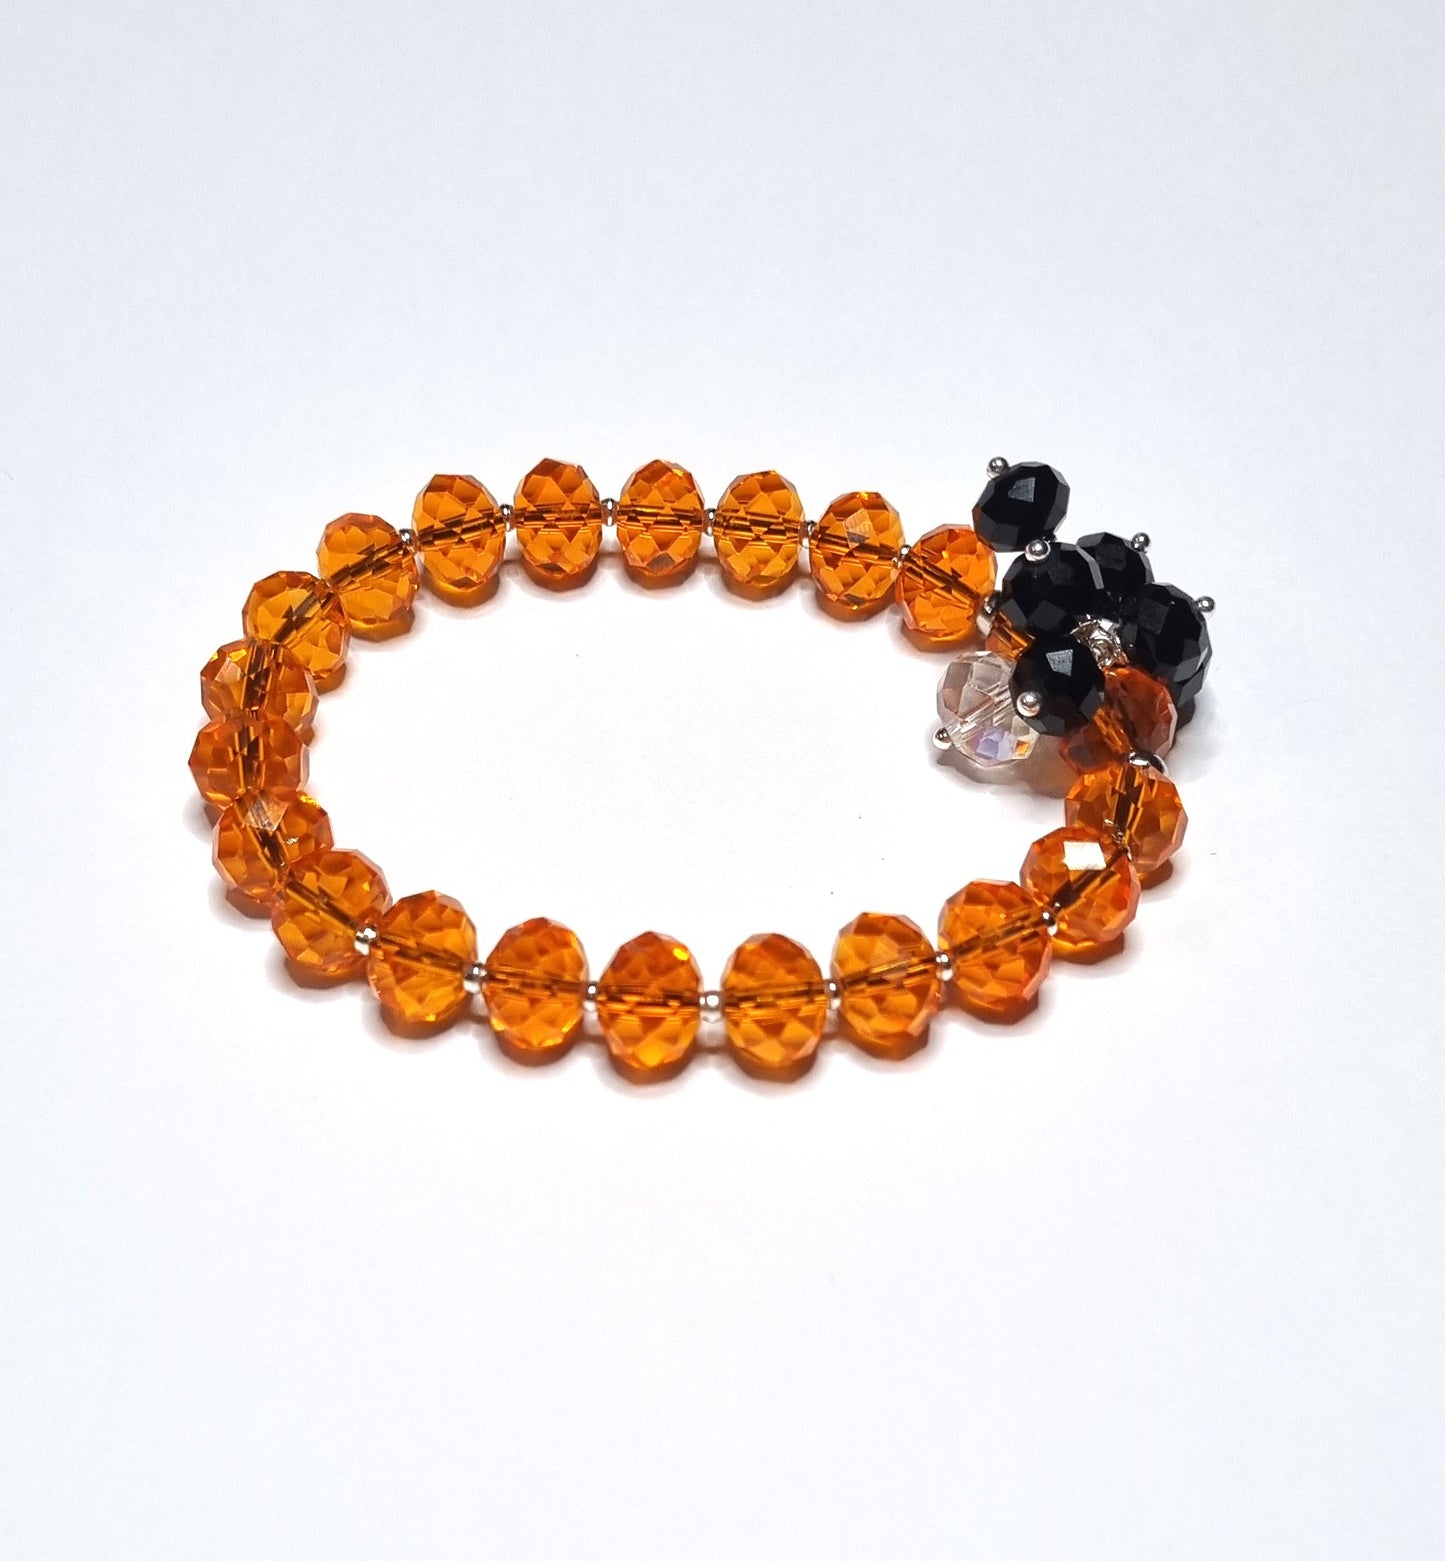 Bracciale I CRISTALLI .099 braccialino elastico arancio ciondolini cristalli neri  e trasparente